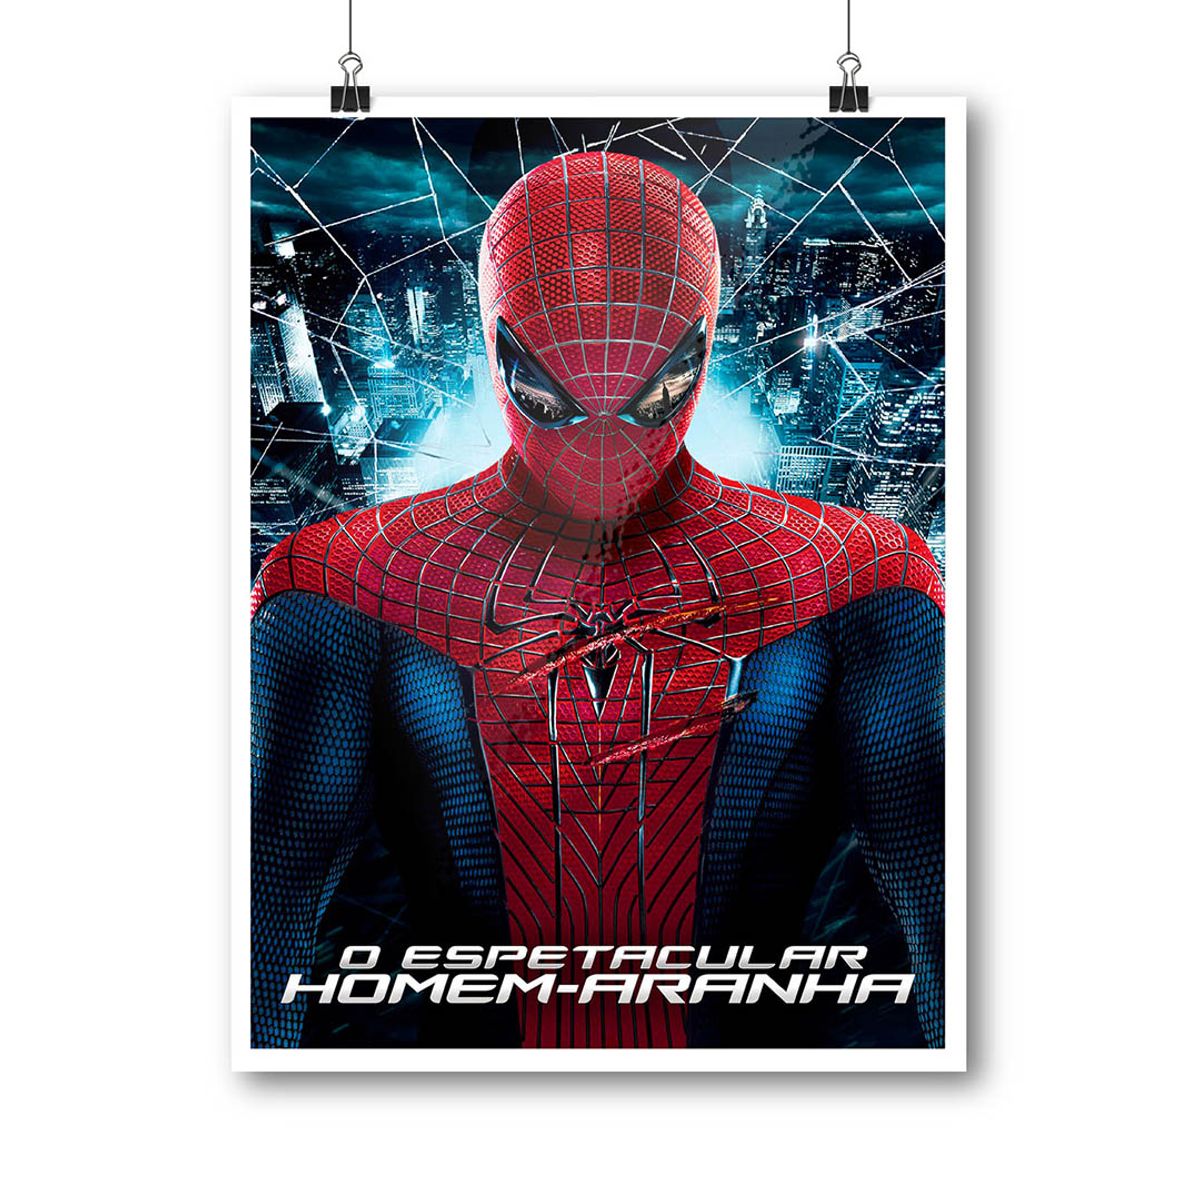 Nome do produto: Poster O Espetacular Homem-Aranha (2012)